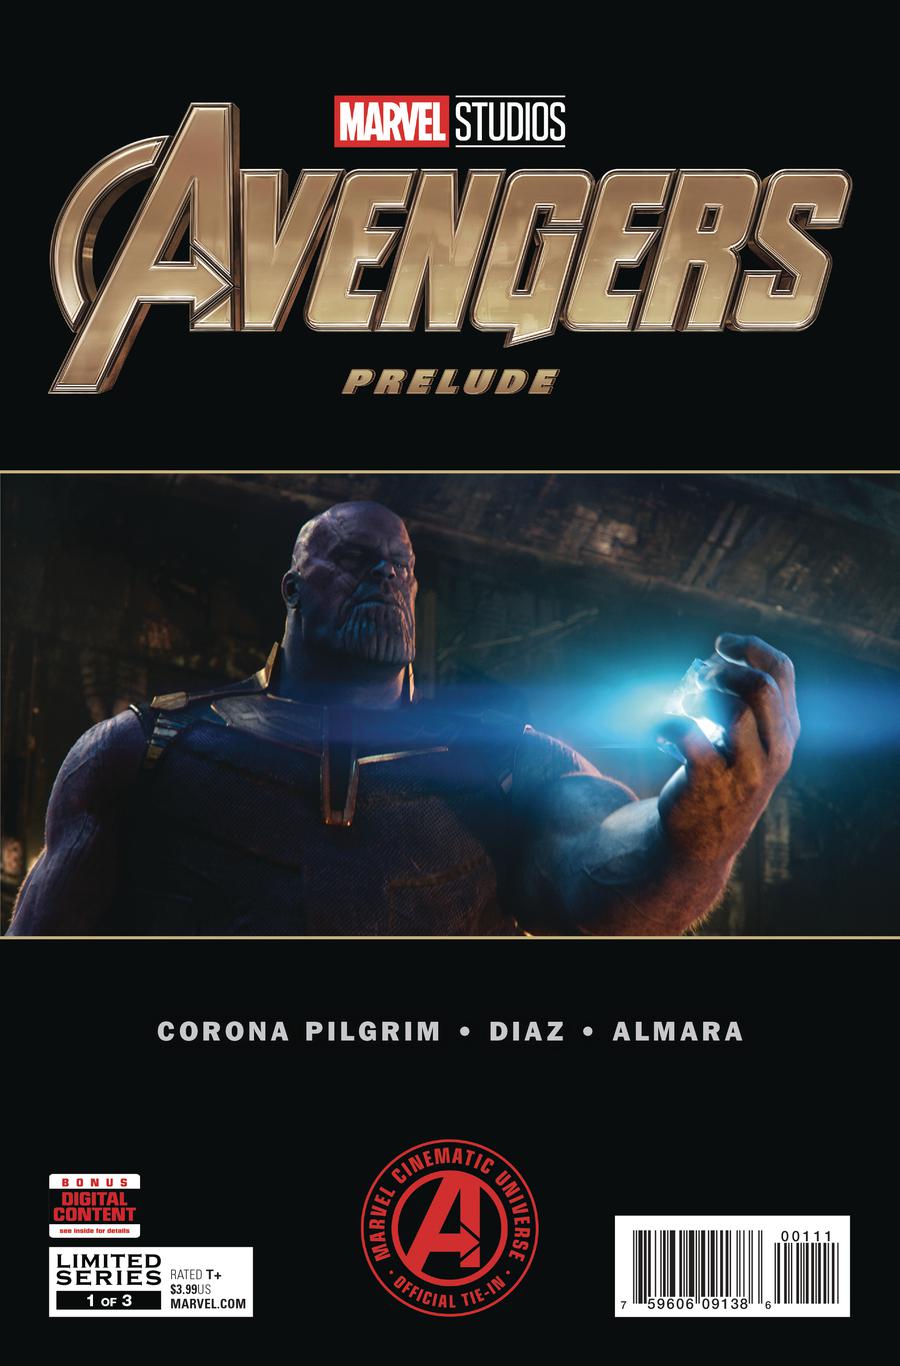 Marvels Avengers Endgame Prelude #1